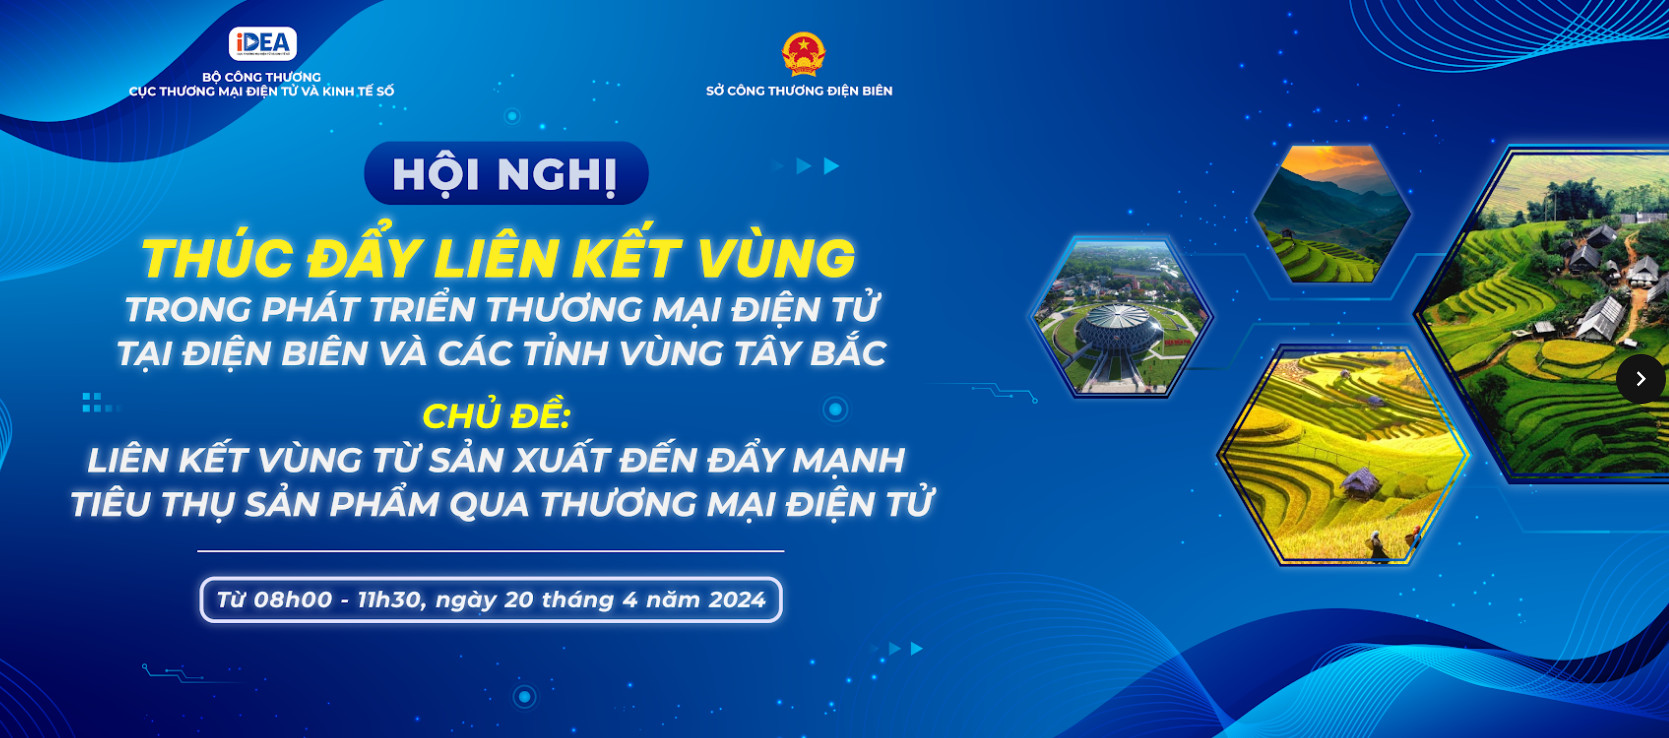 Sắp diễn ra Hội nghị thúc đẩy liên kết vùng trong phát triển thương mại điện tử tại Điện Biên và các tỉnh Vùng Tây Bắc